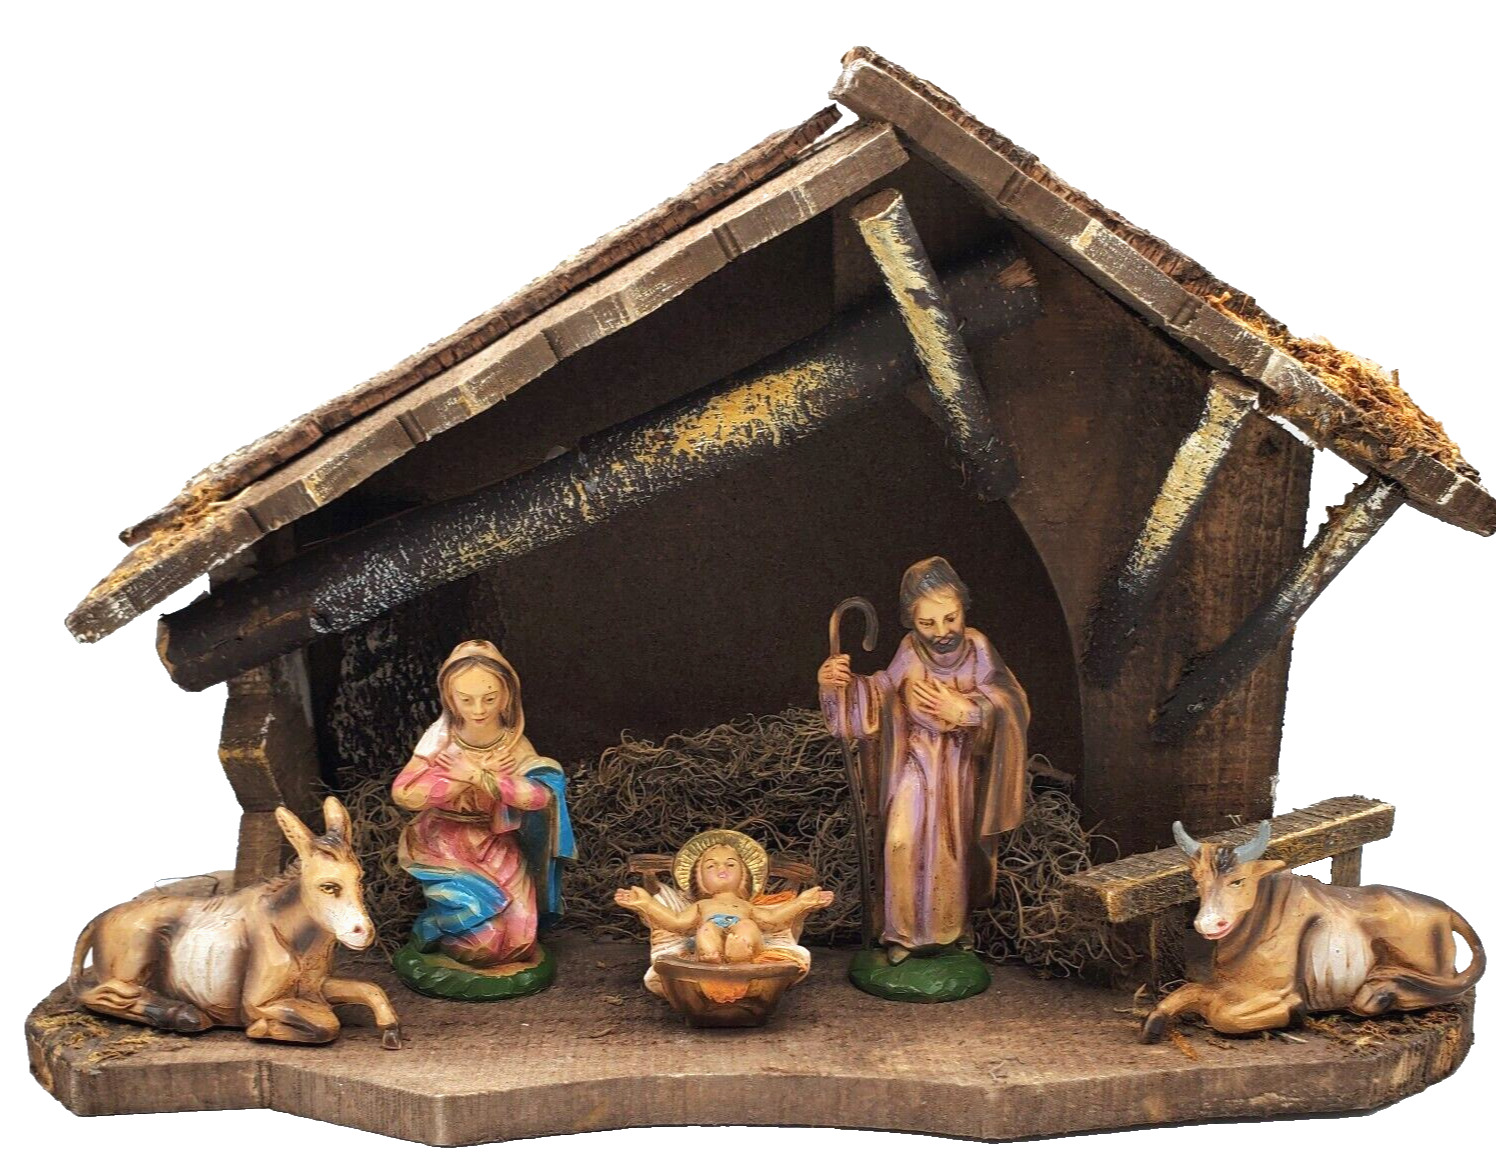 VTG Italian Nativity Set Creche Statues Manger Stable Jesus Christmas Heirloom 